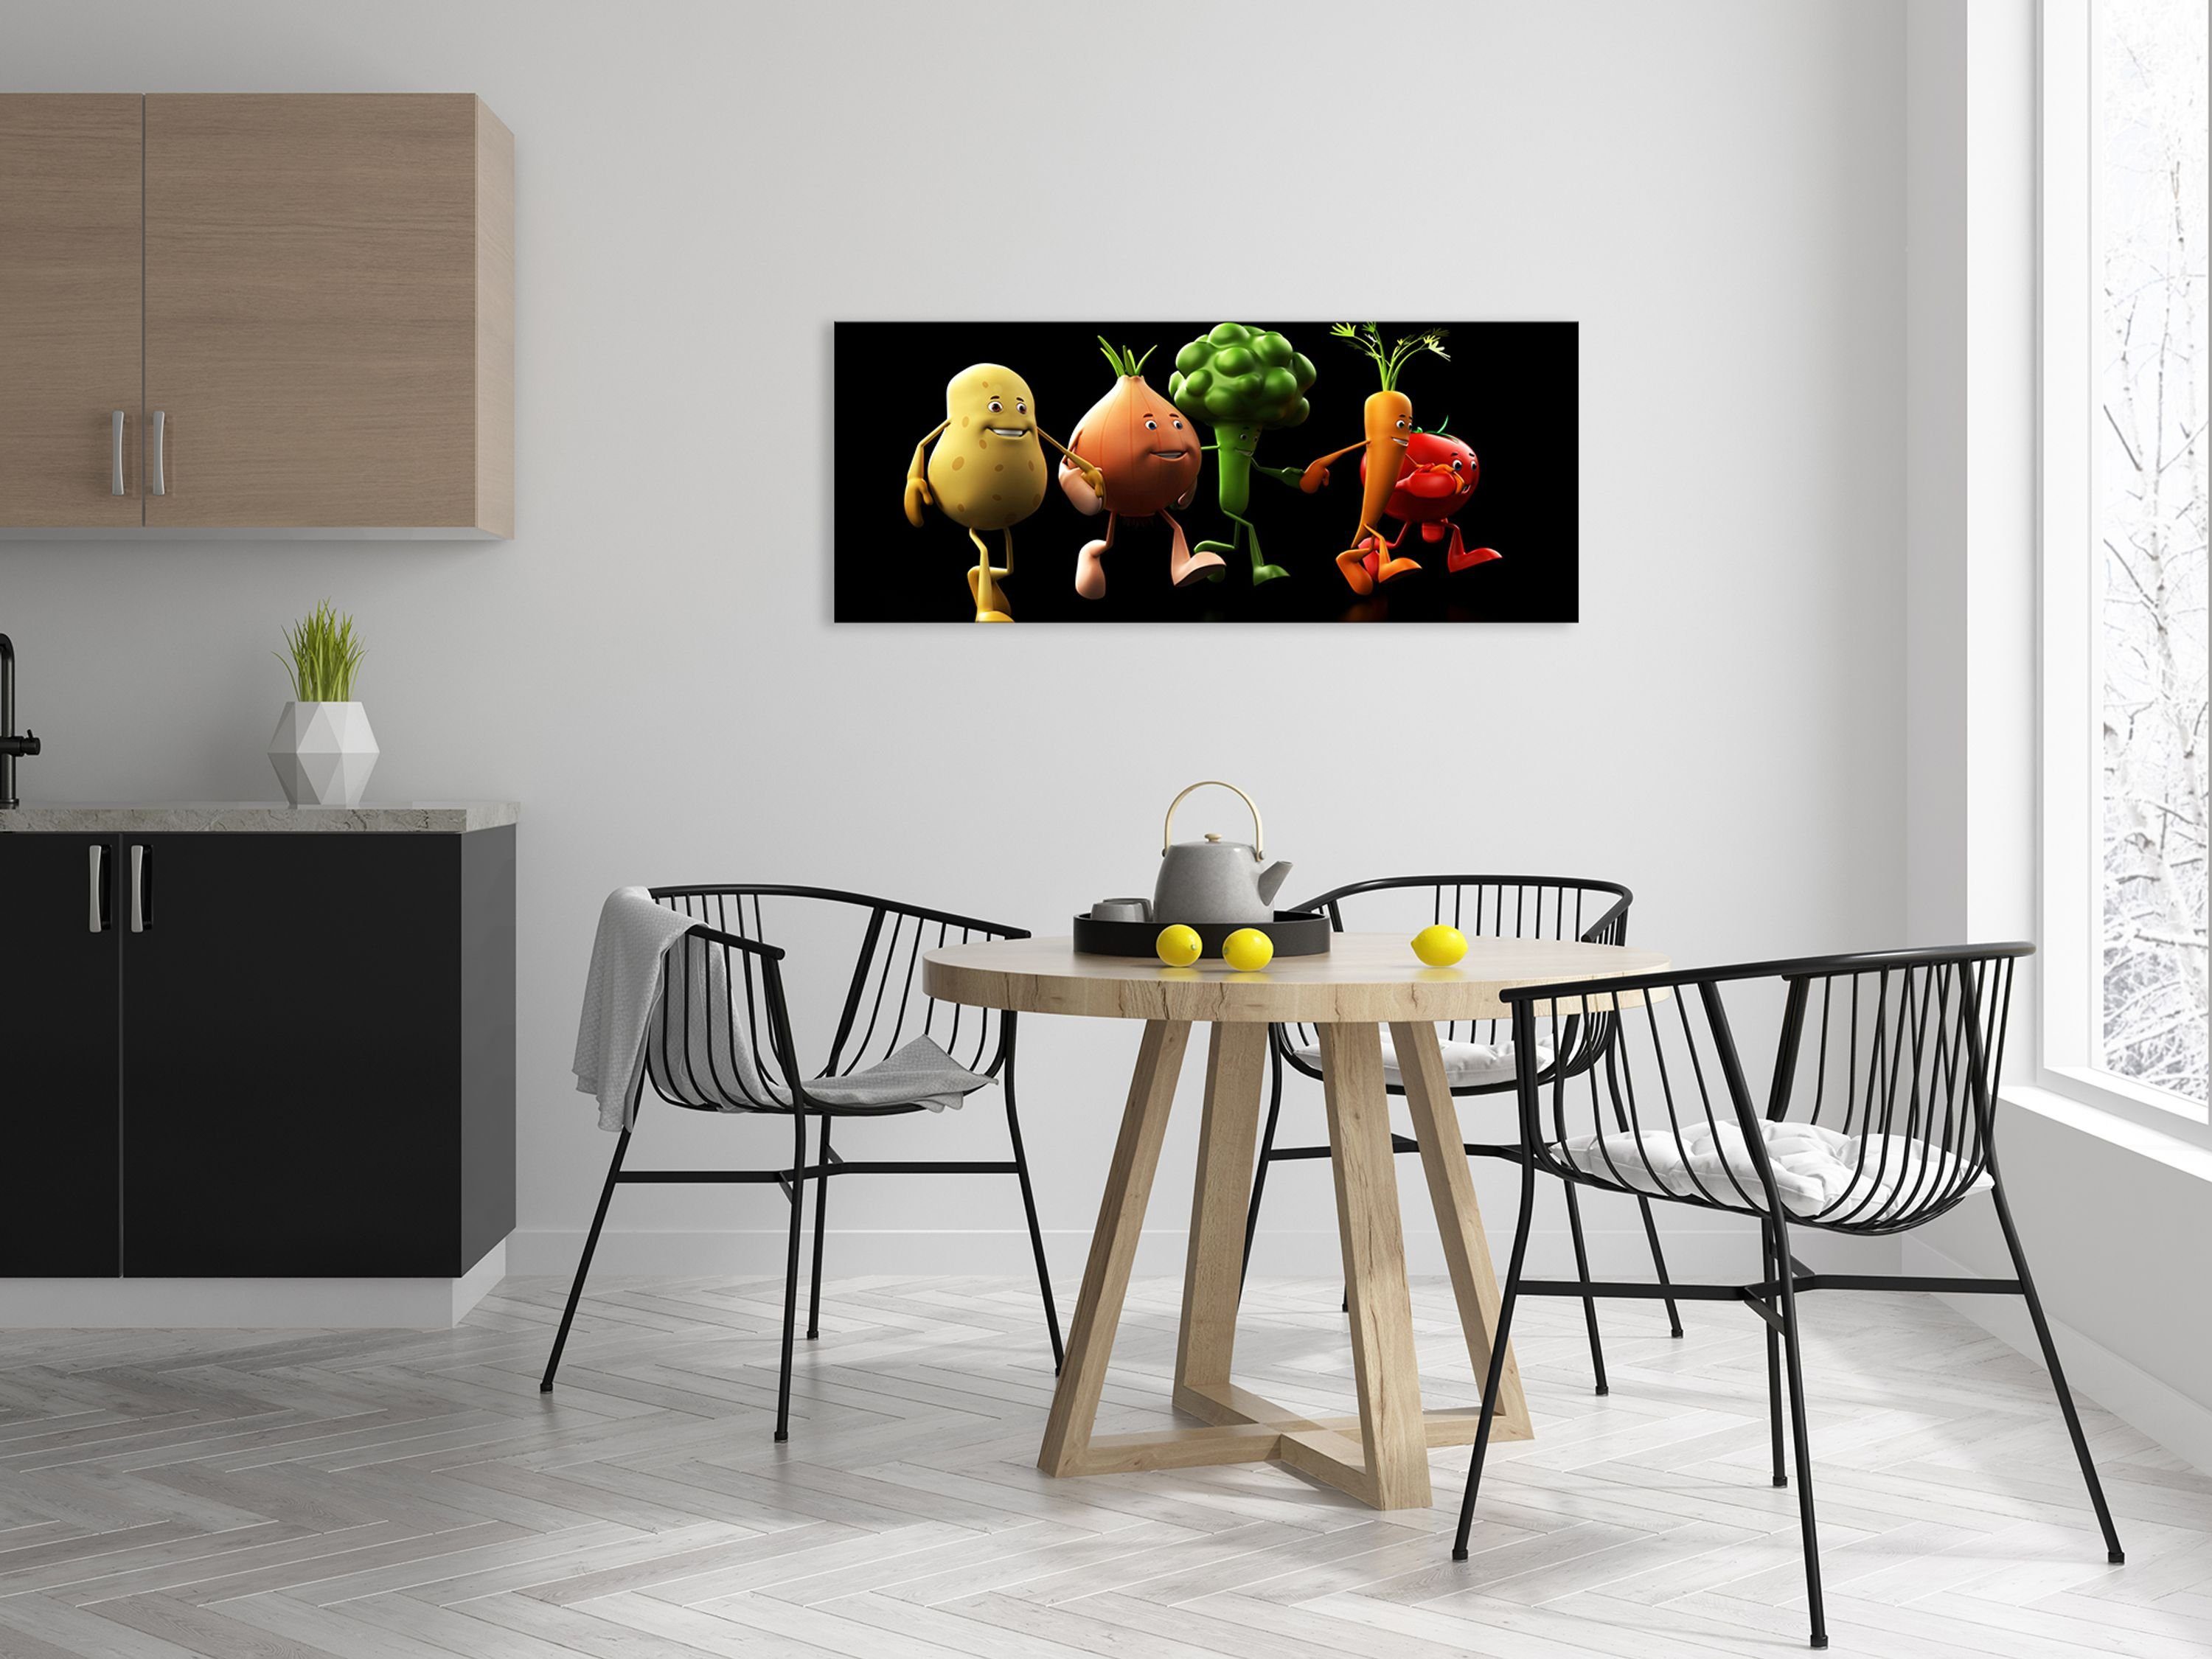 groß aus Glasbild Küchenbild: artissimo Gemüse lustiges witzig, Glas für Glasbild quer cm Bild die Küche XXL 125x50